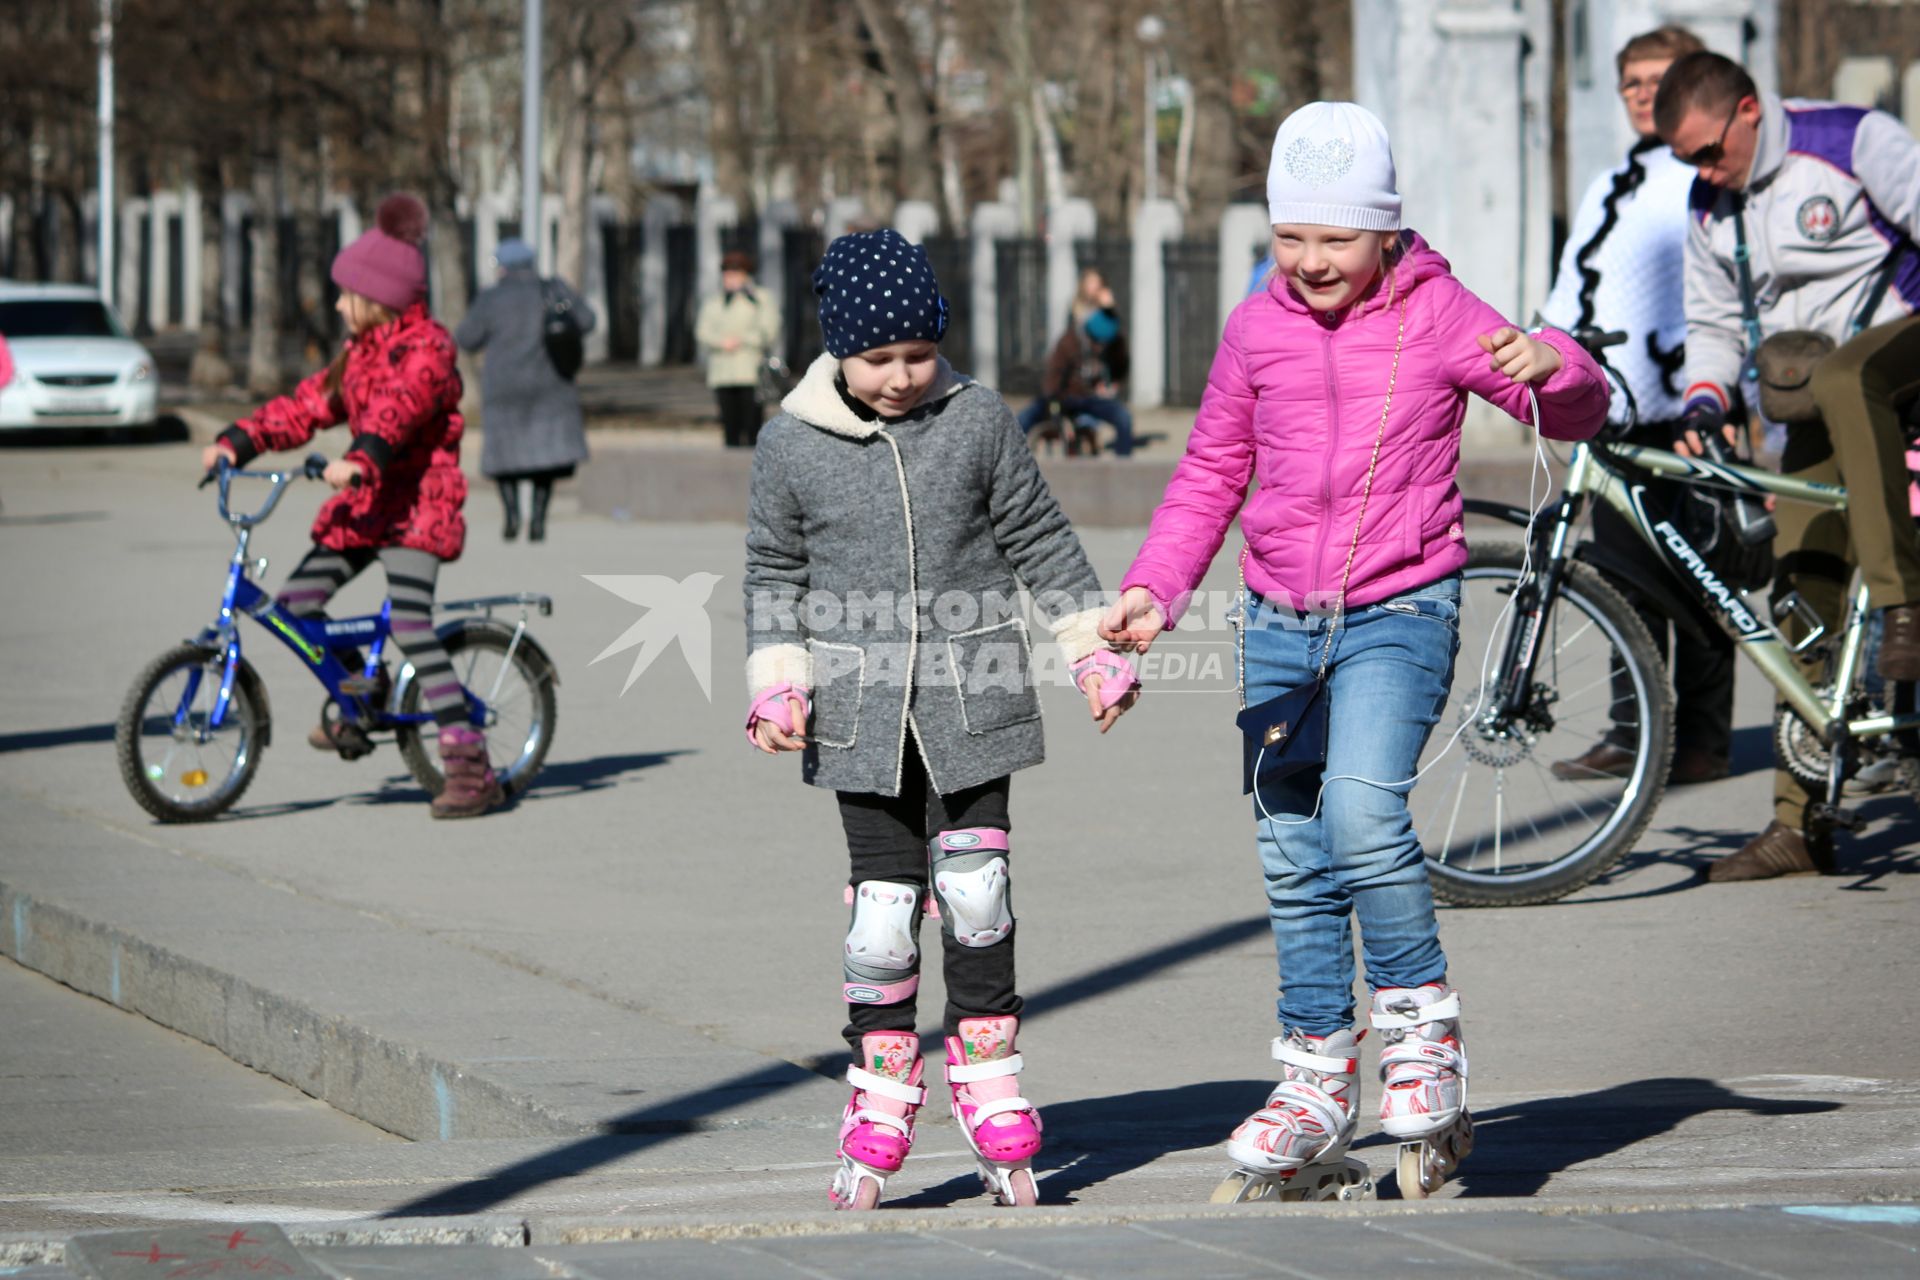 Дети на роликахи велосипедах гуляют на улице.